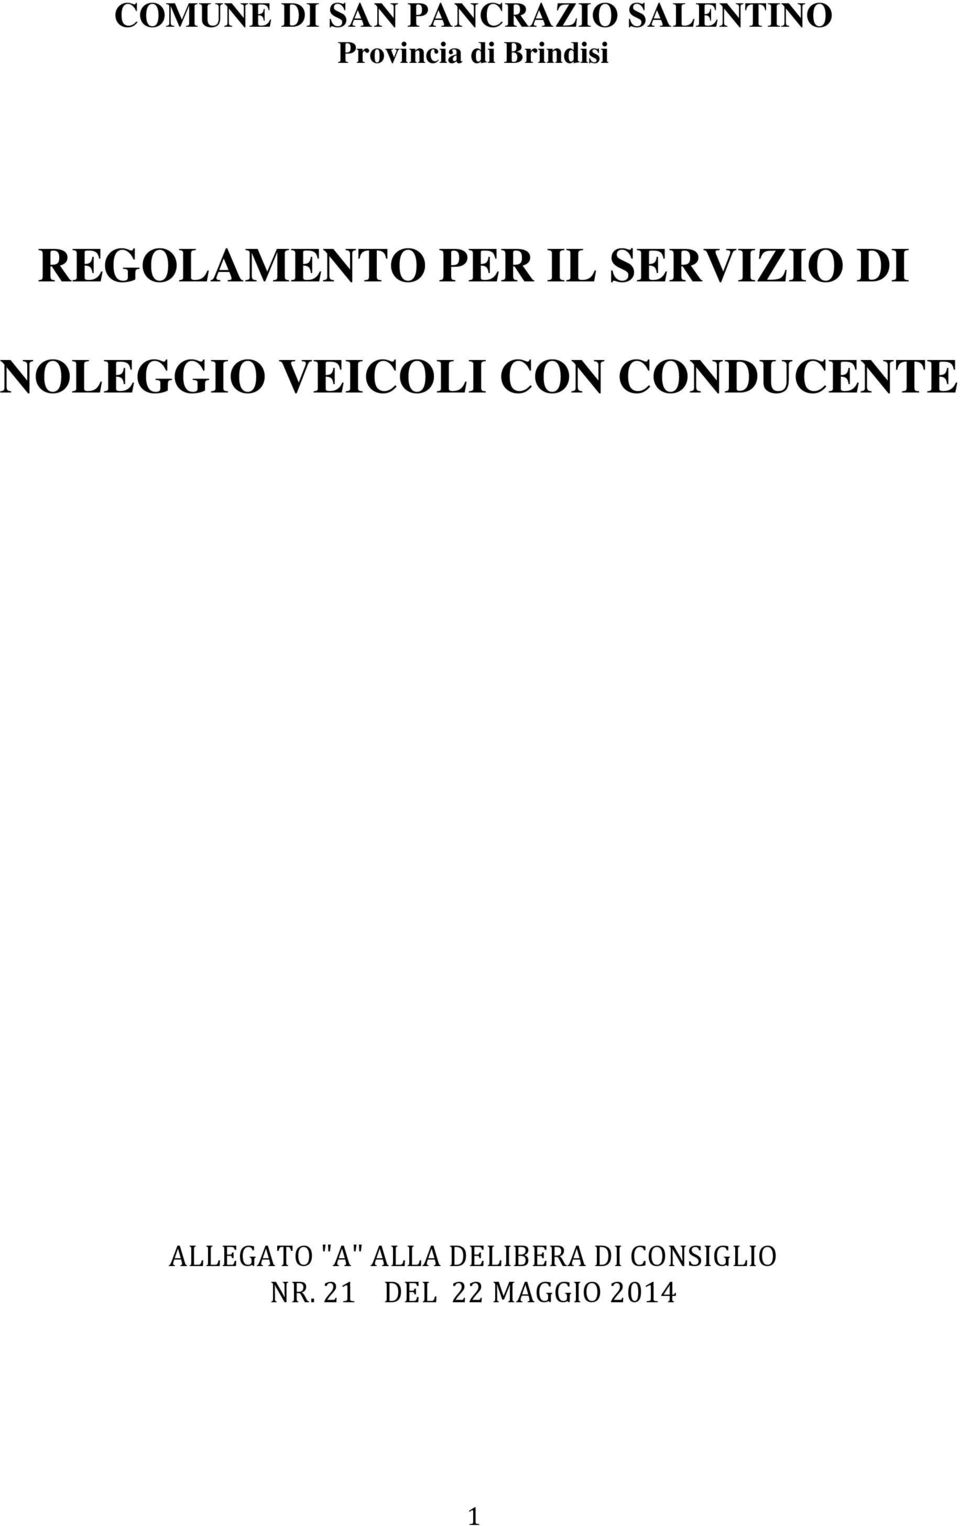 NOLEGGIO VEICOLI CON CONDUCENTE ALLEGATO "A"